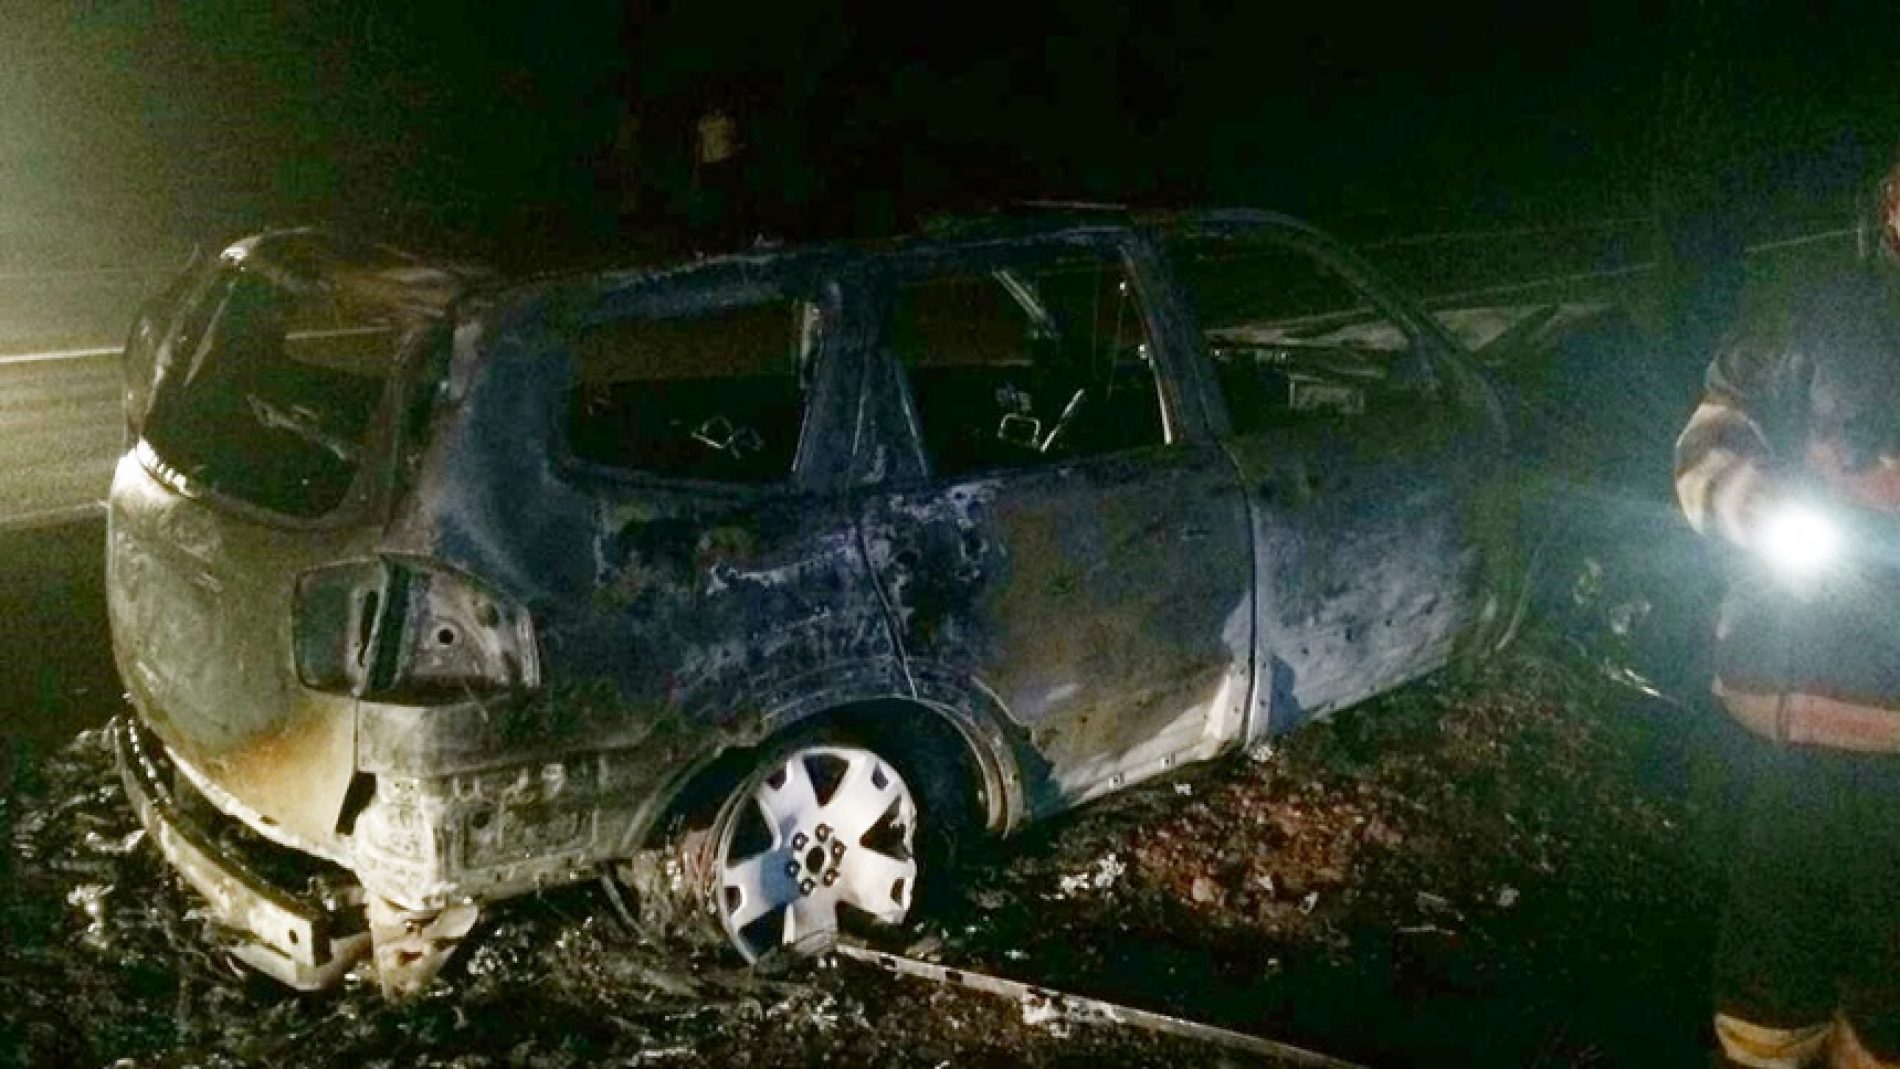 ALTAIR – Motorista perde controle bate em árvore e carro pega fogo